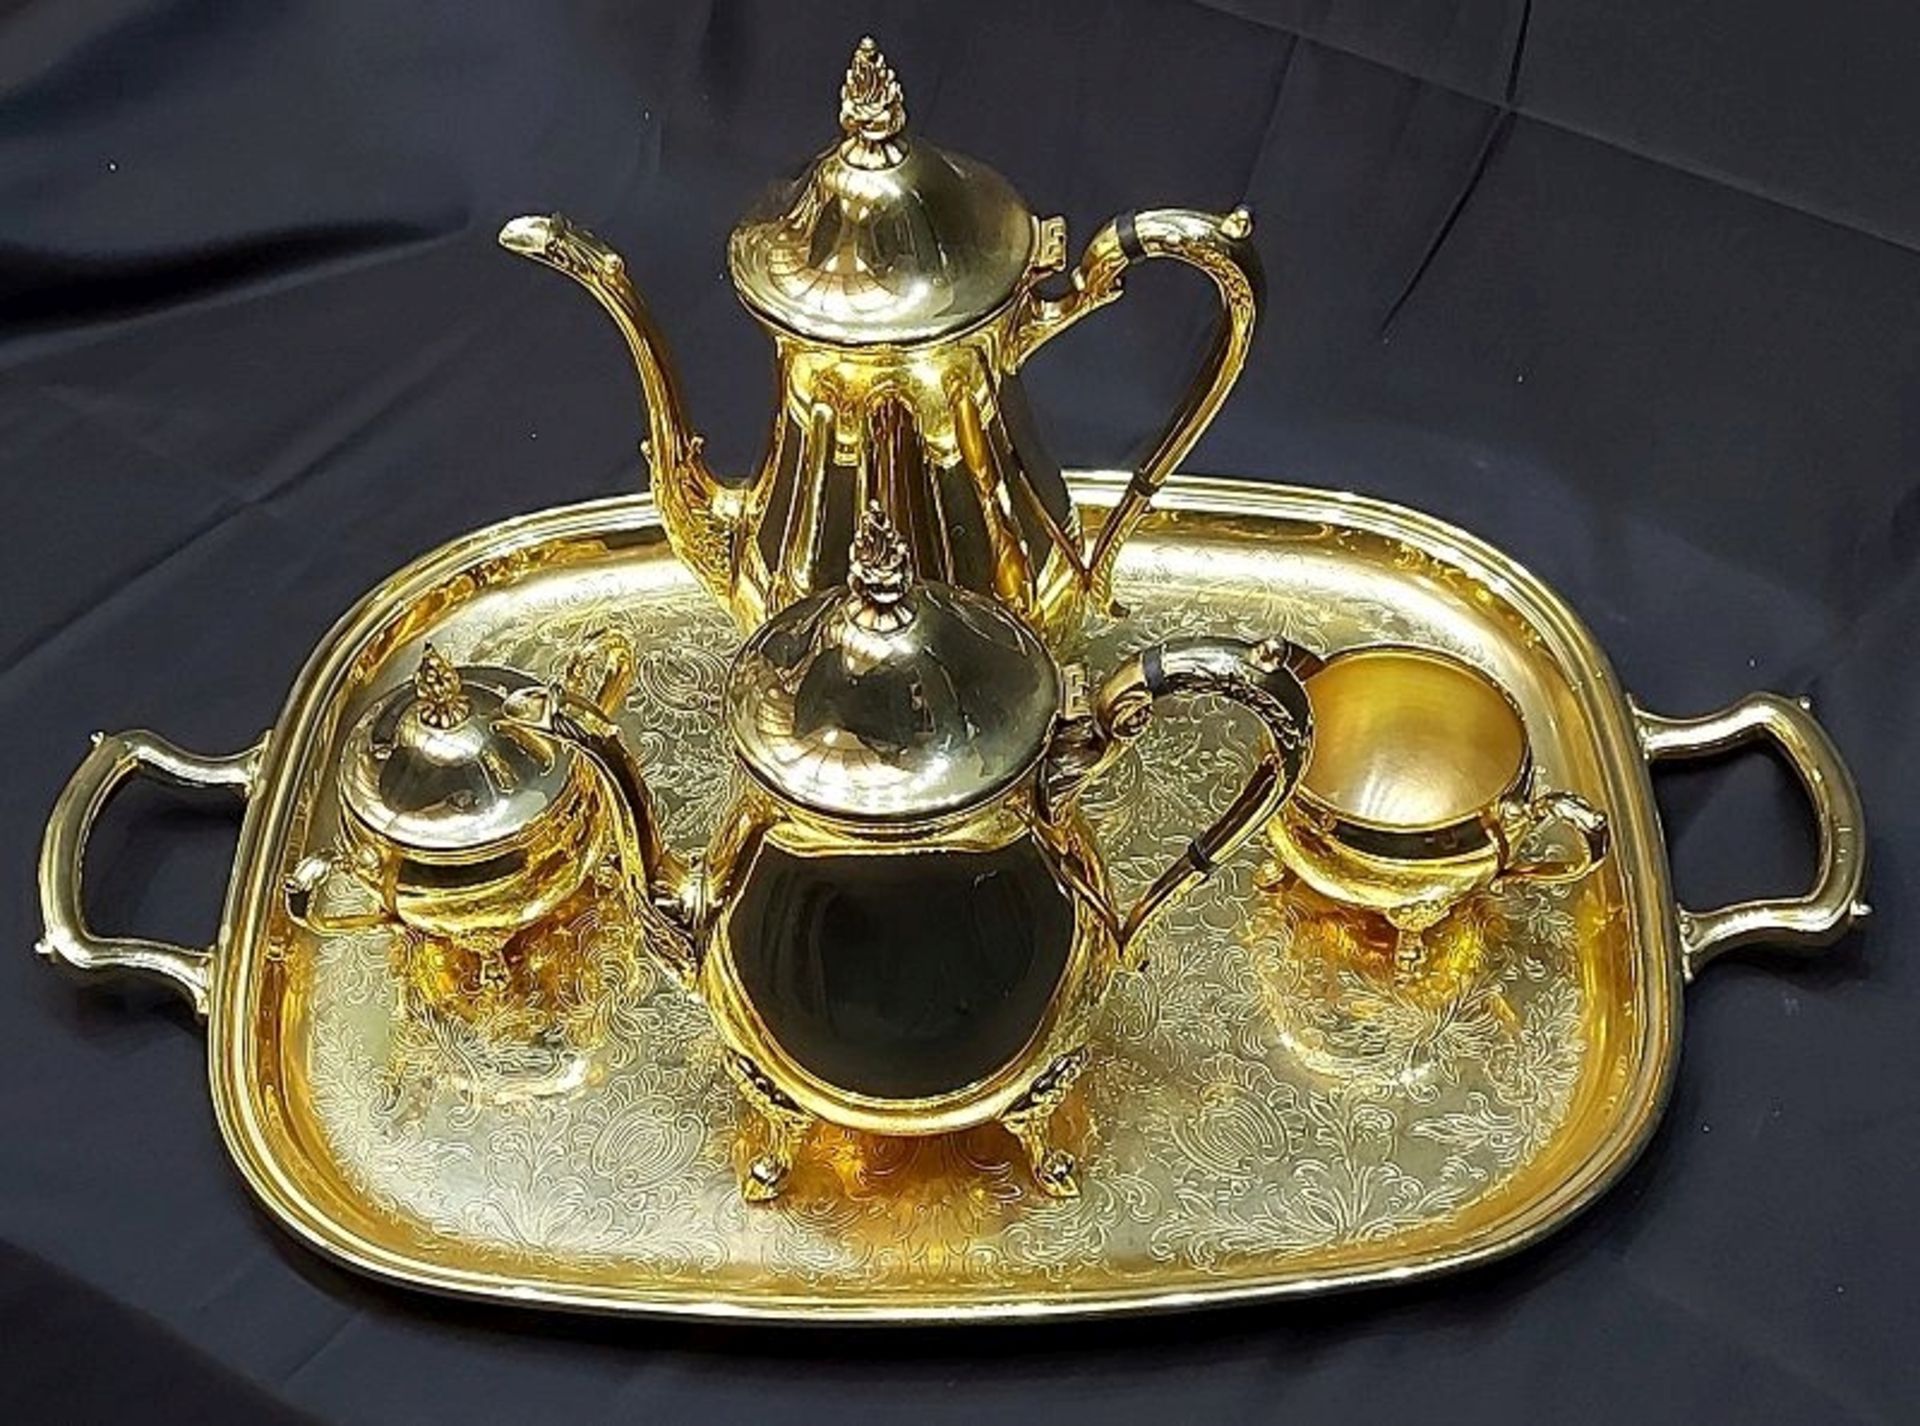 Aus Kapitänsnachlass - Imposanter Kaffee/Teekern incl. Tablett vergoldet 18k Oman - Bild 6 aus 9